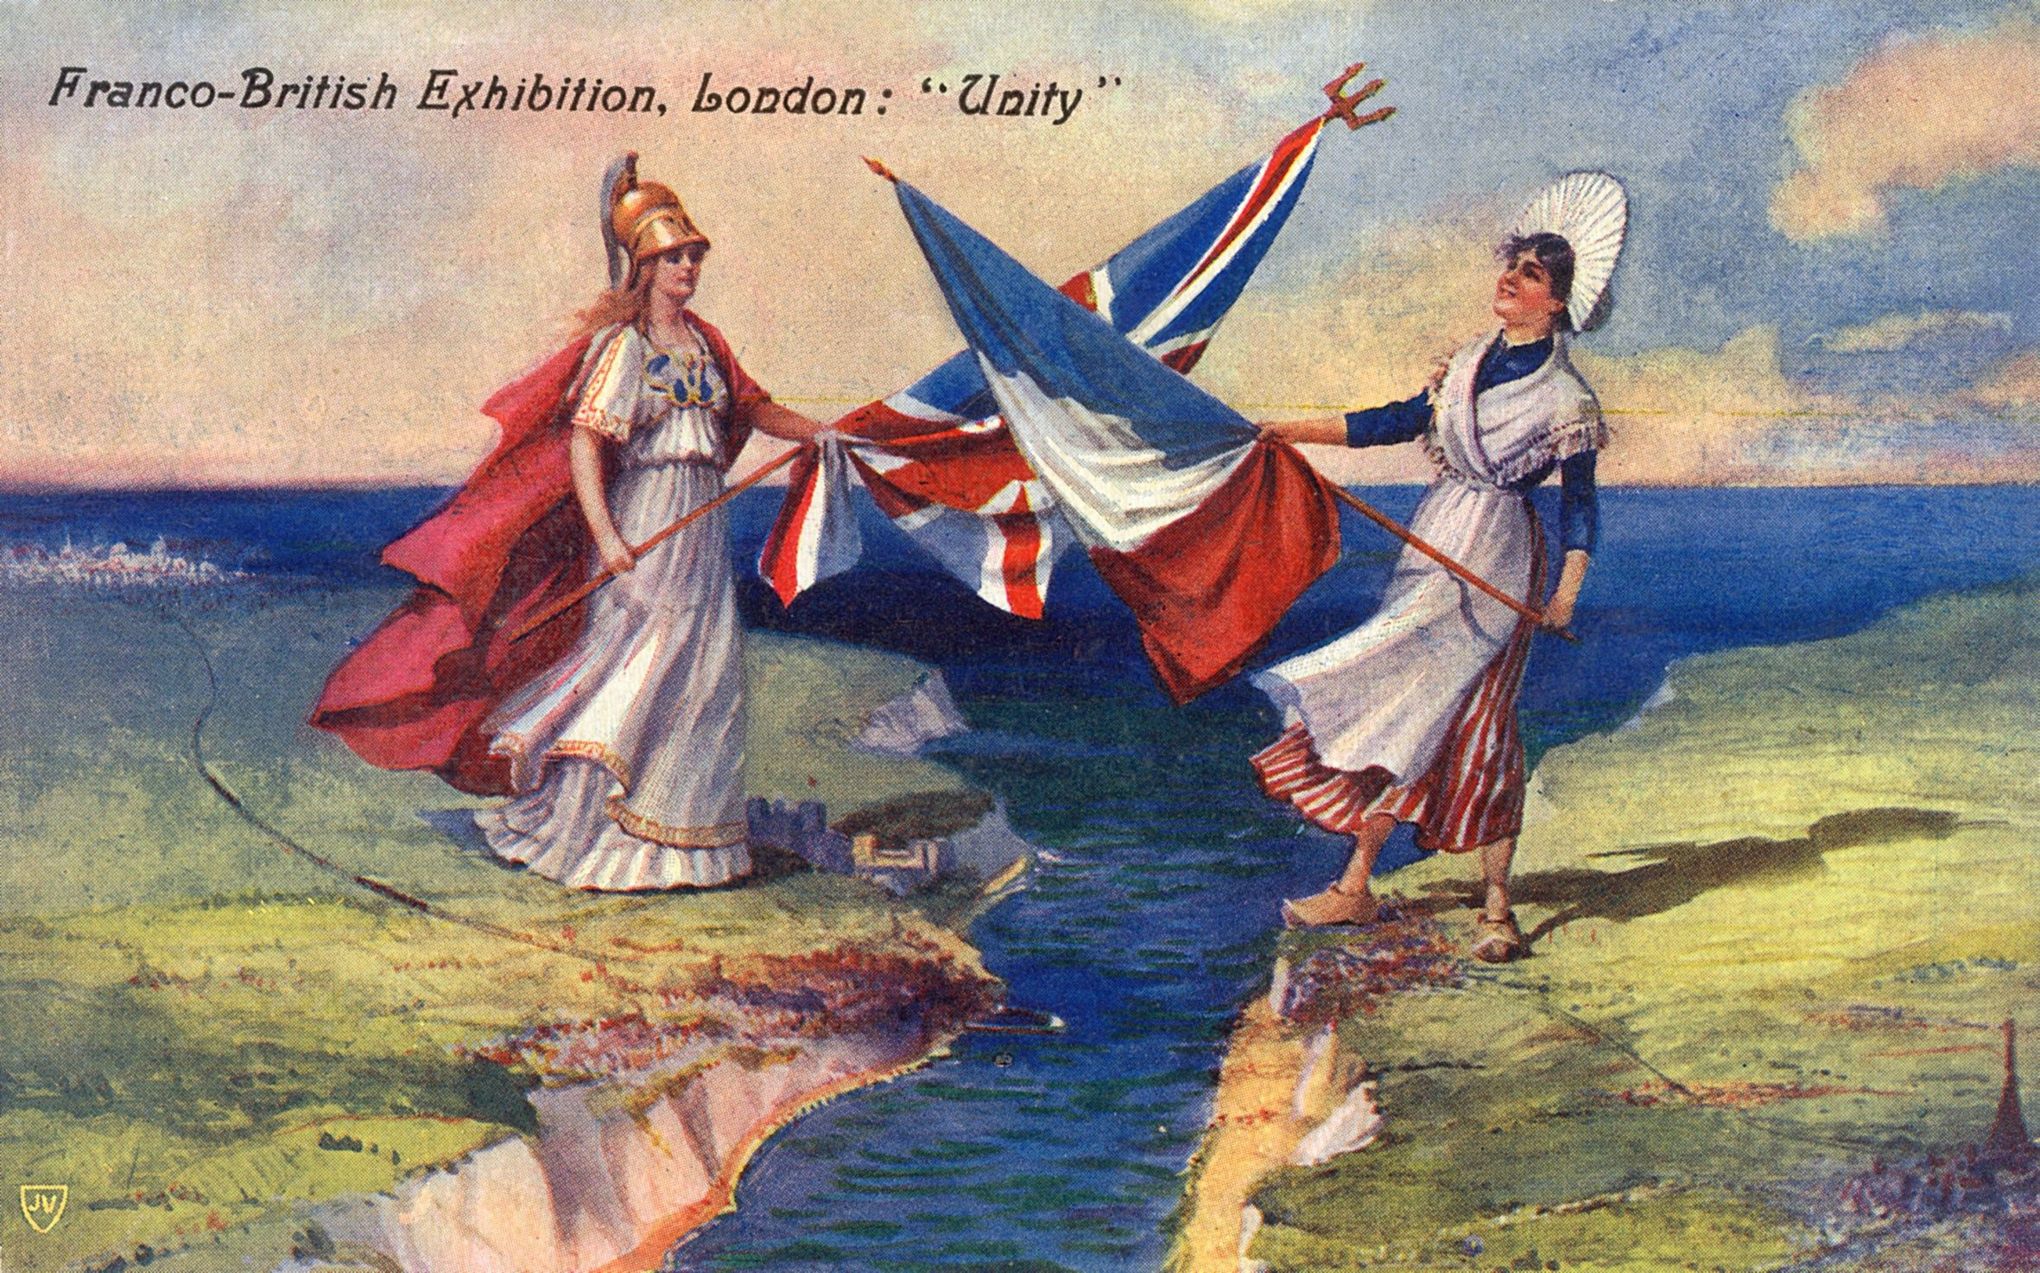 Een prent om het bondgenootschap tussen Frankrijk en Groot-Brittannië̈ te vieren, 1908. (Beeld: Rue des Archives)